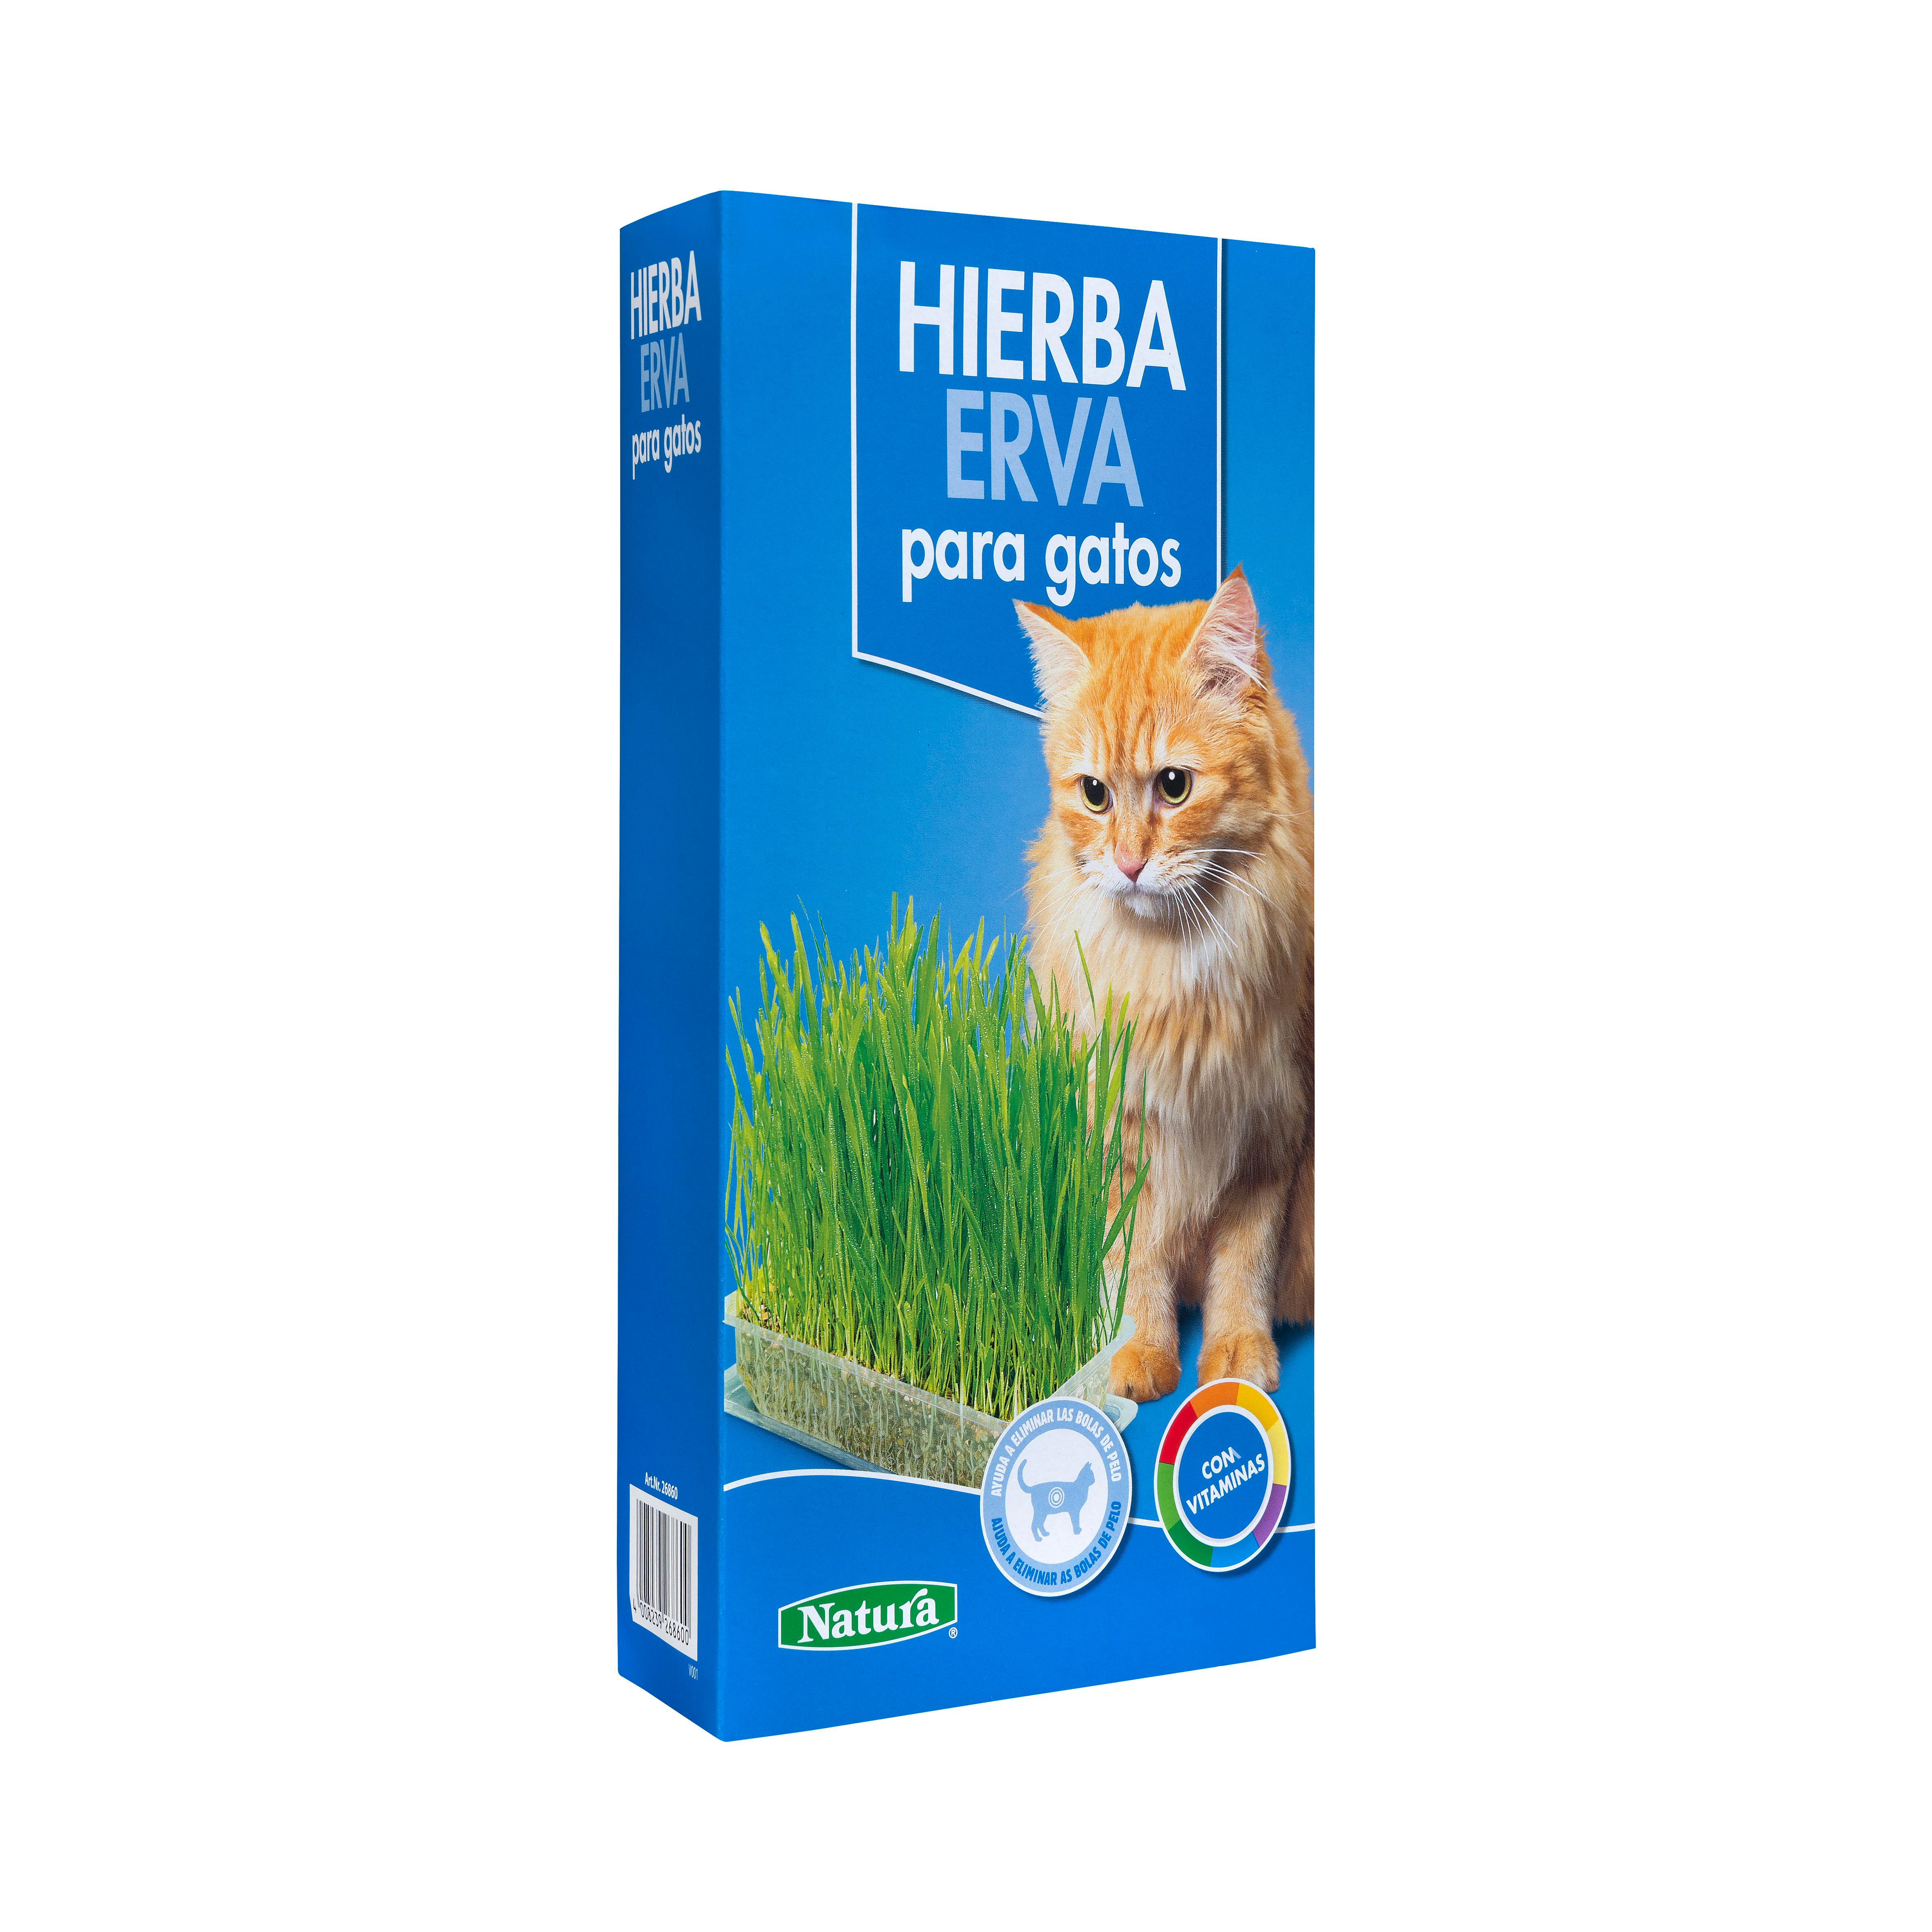 hierba para gatos de Mercadona